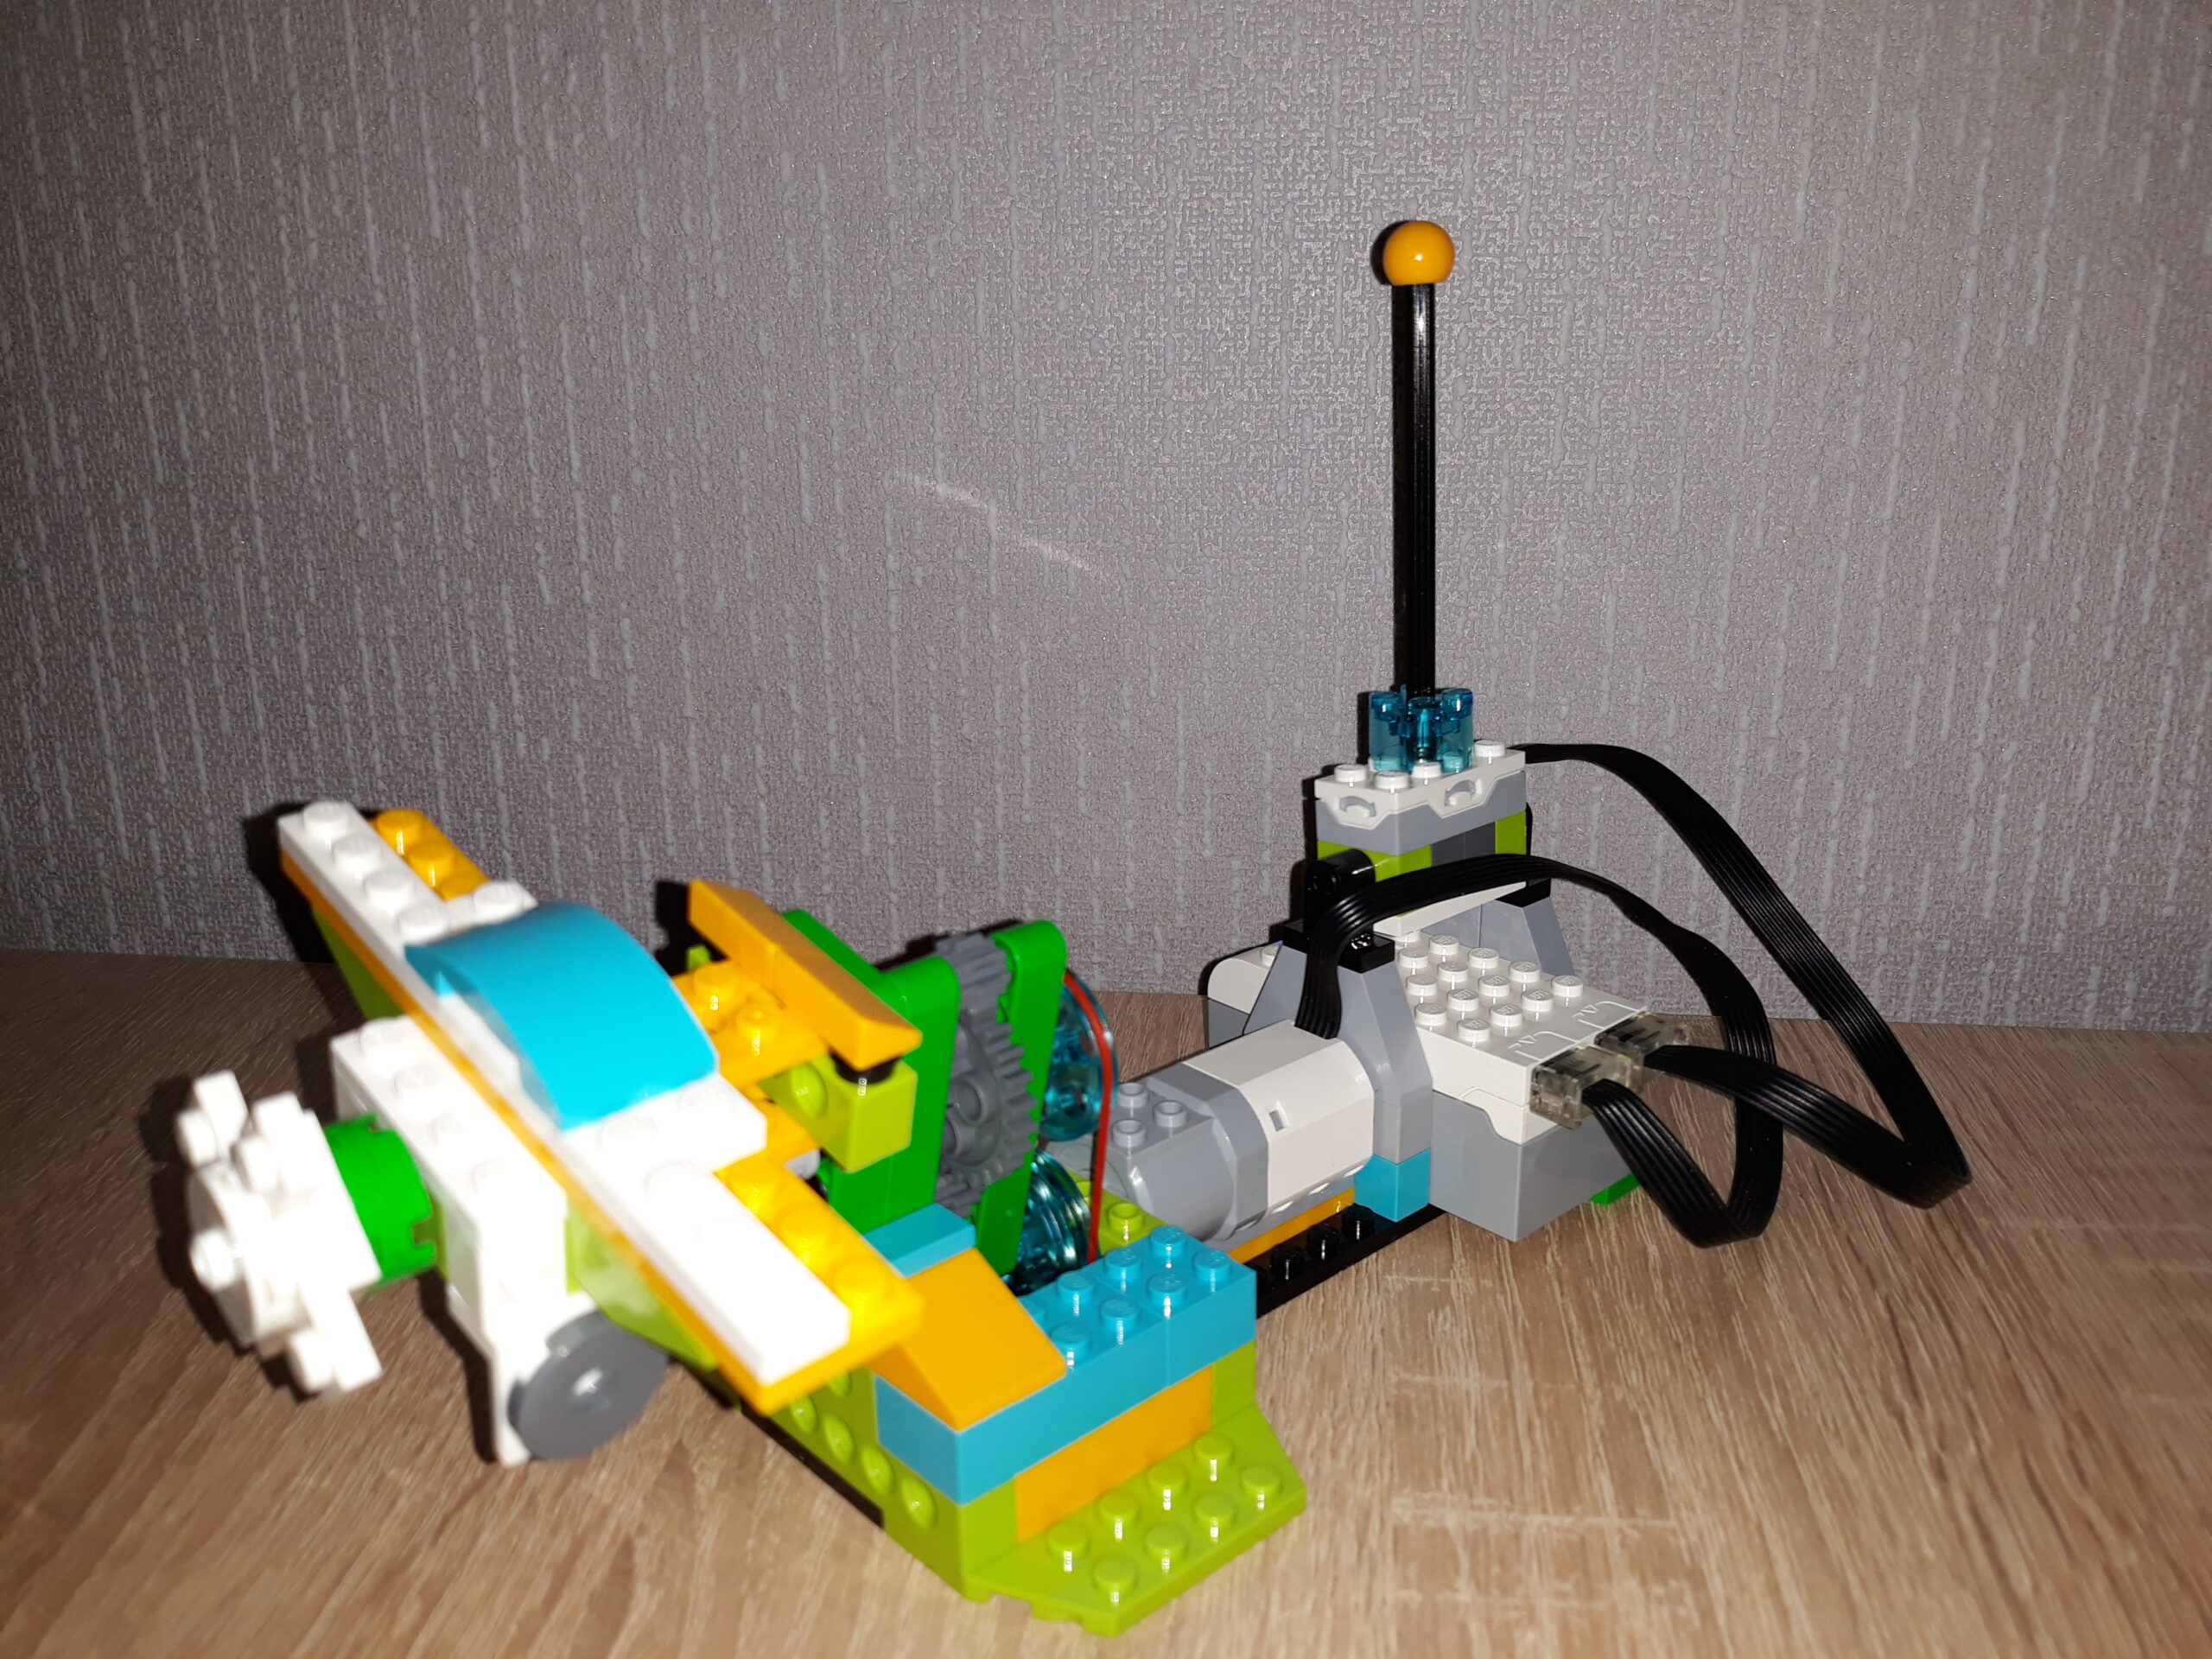 Инструкция по сборке из набора LEGO Education WeDo 2.0 Самолет на виражах